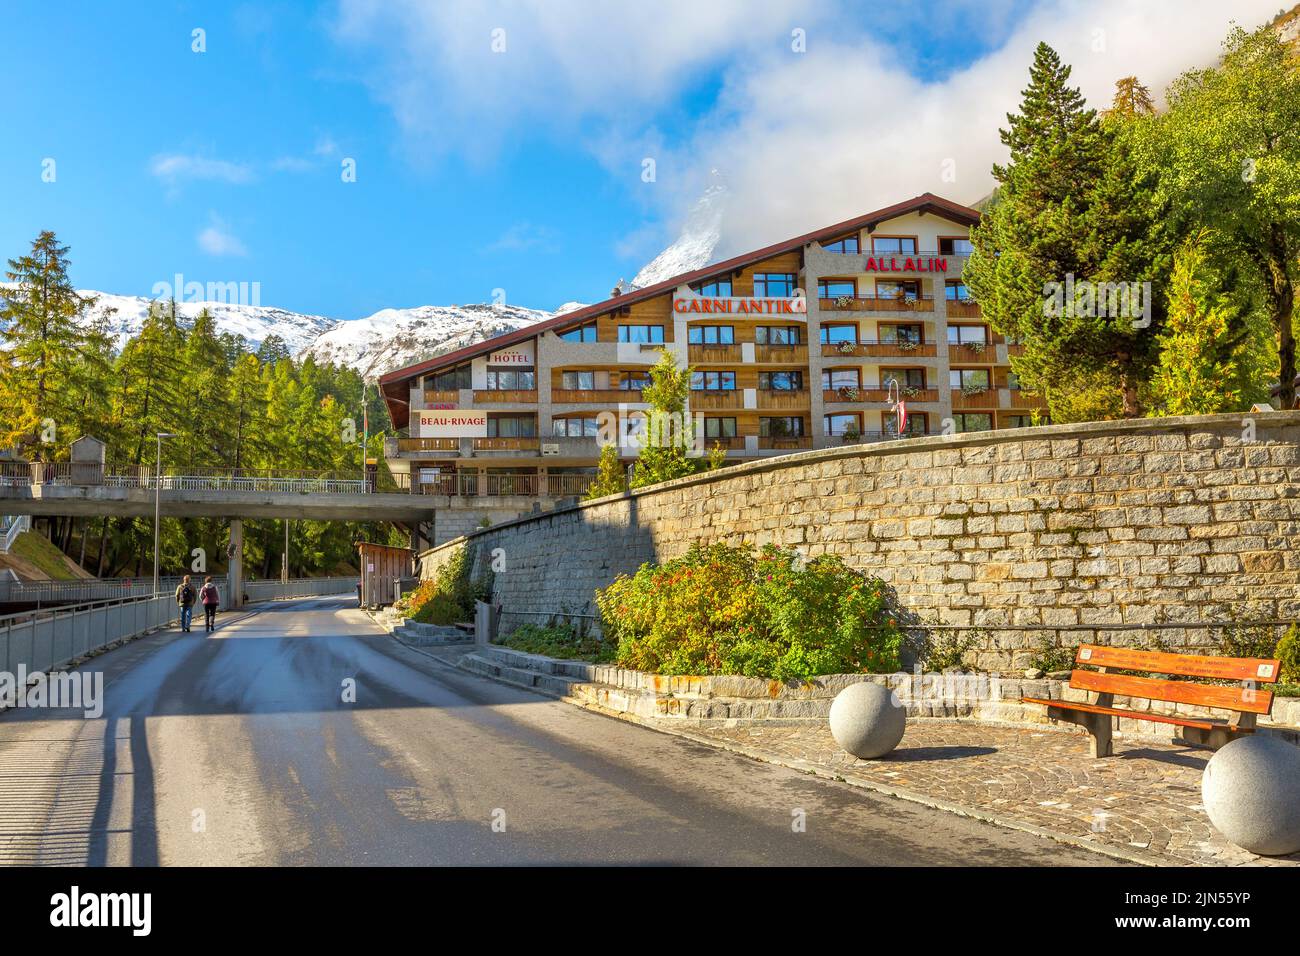 Zermatt, Svizzera - 7 ottobre 2019: Vista sulla strada della città nella famosa stazione sciistica delle Alpi svizzere, Matterhorn Foto Stock